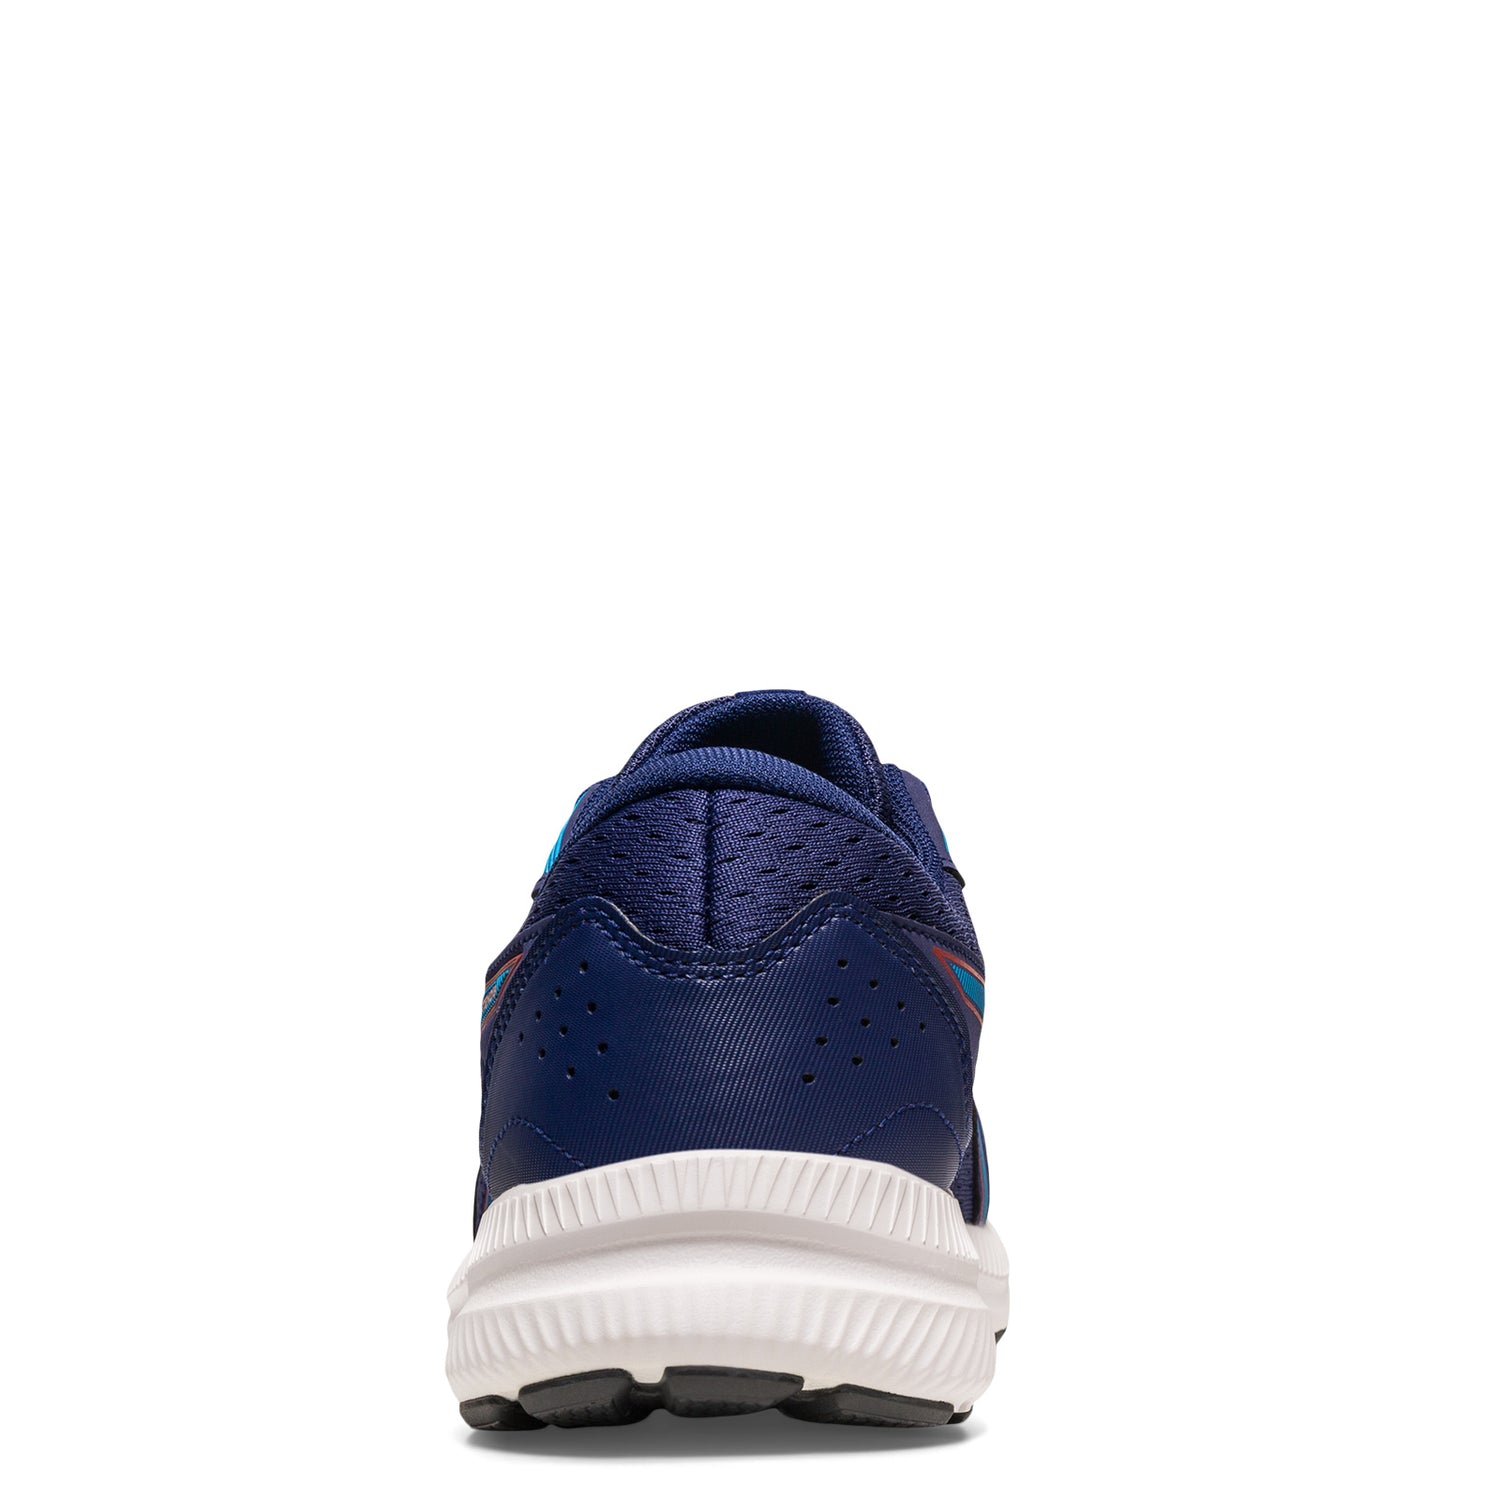 Peltz Shoes  Men's ASICS GEL-Contend 8 Running Shoe INDIGO BLUE/ISLAND BLUE 1011B492-403